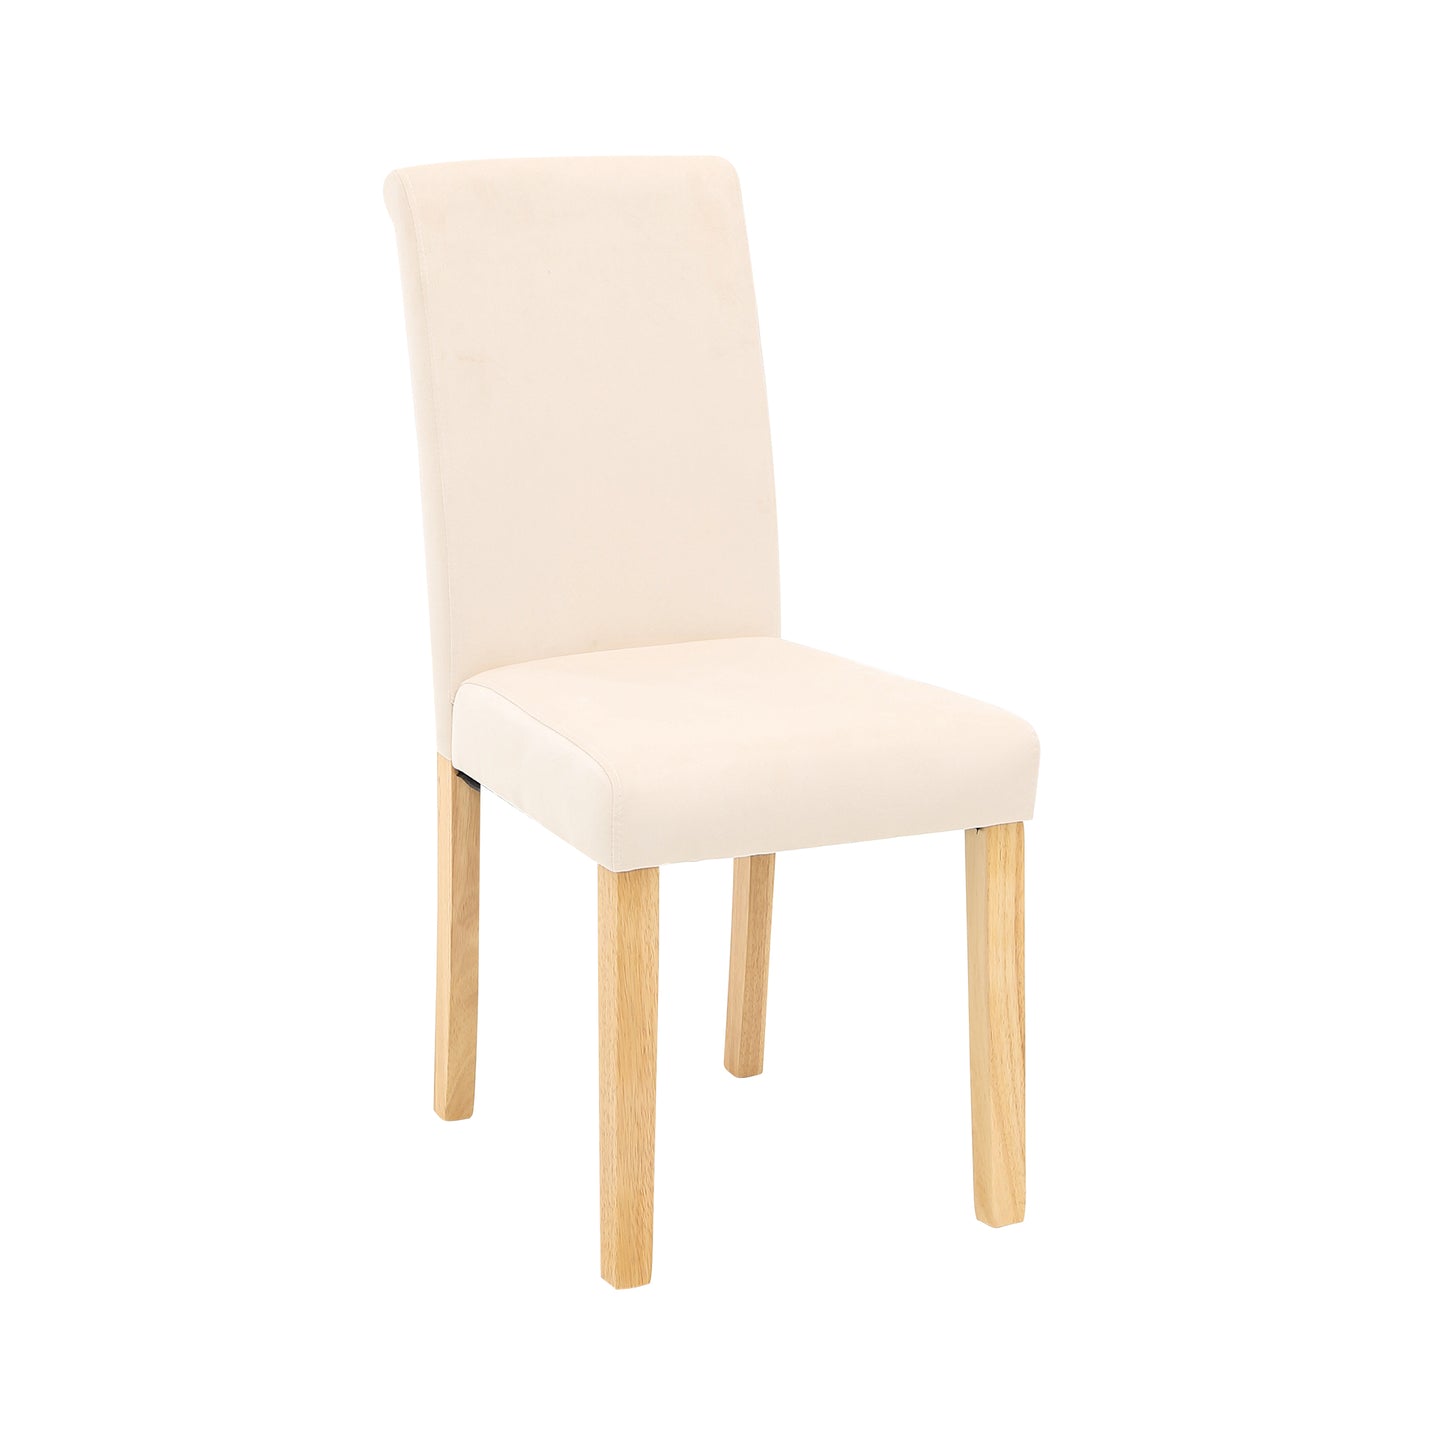 CHOTTO - Anzu Dining Chair - Beige